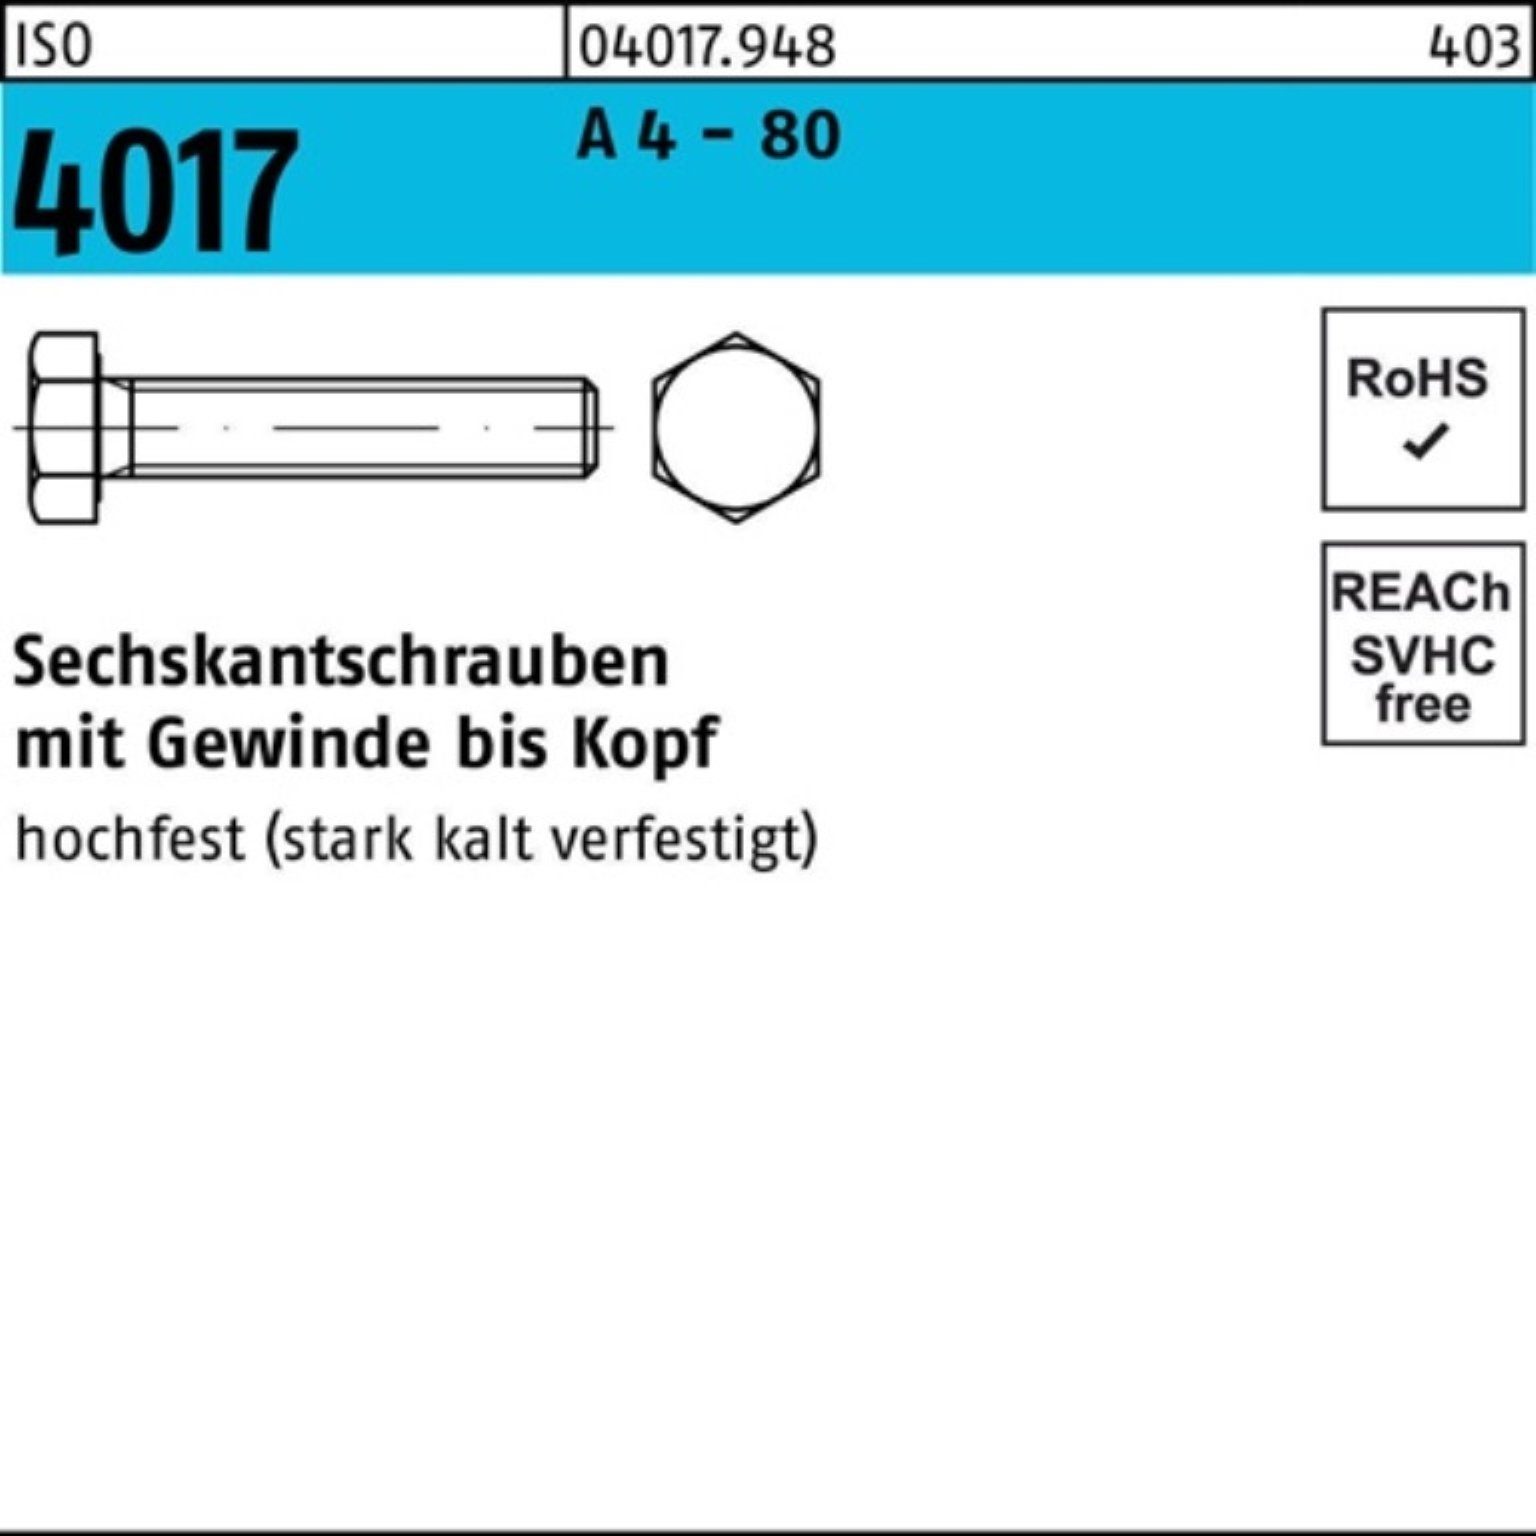 Bufab Sechskantschraube 100er Pack Sechskantschraube ISO 4017 VG M6x 50 A 4 - 80 100 Stück IS